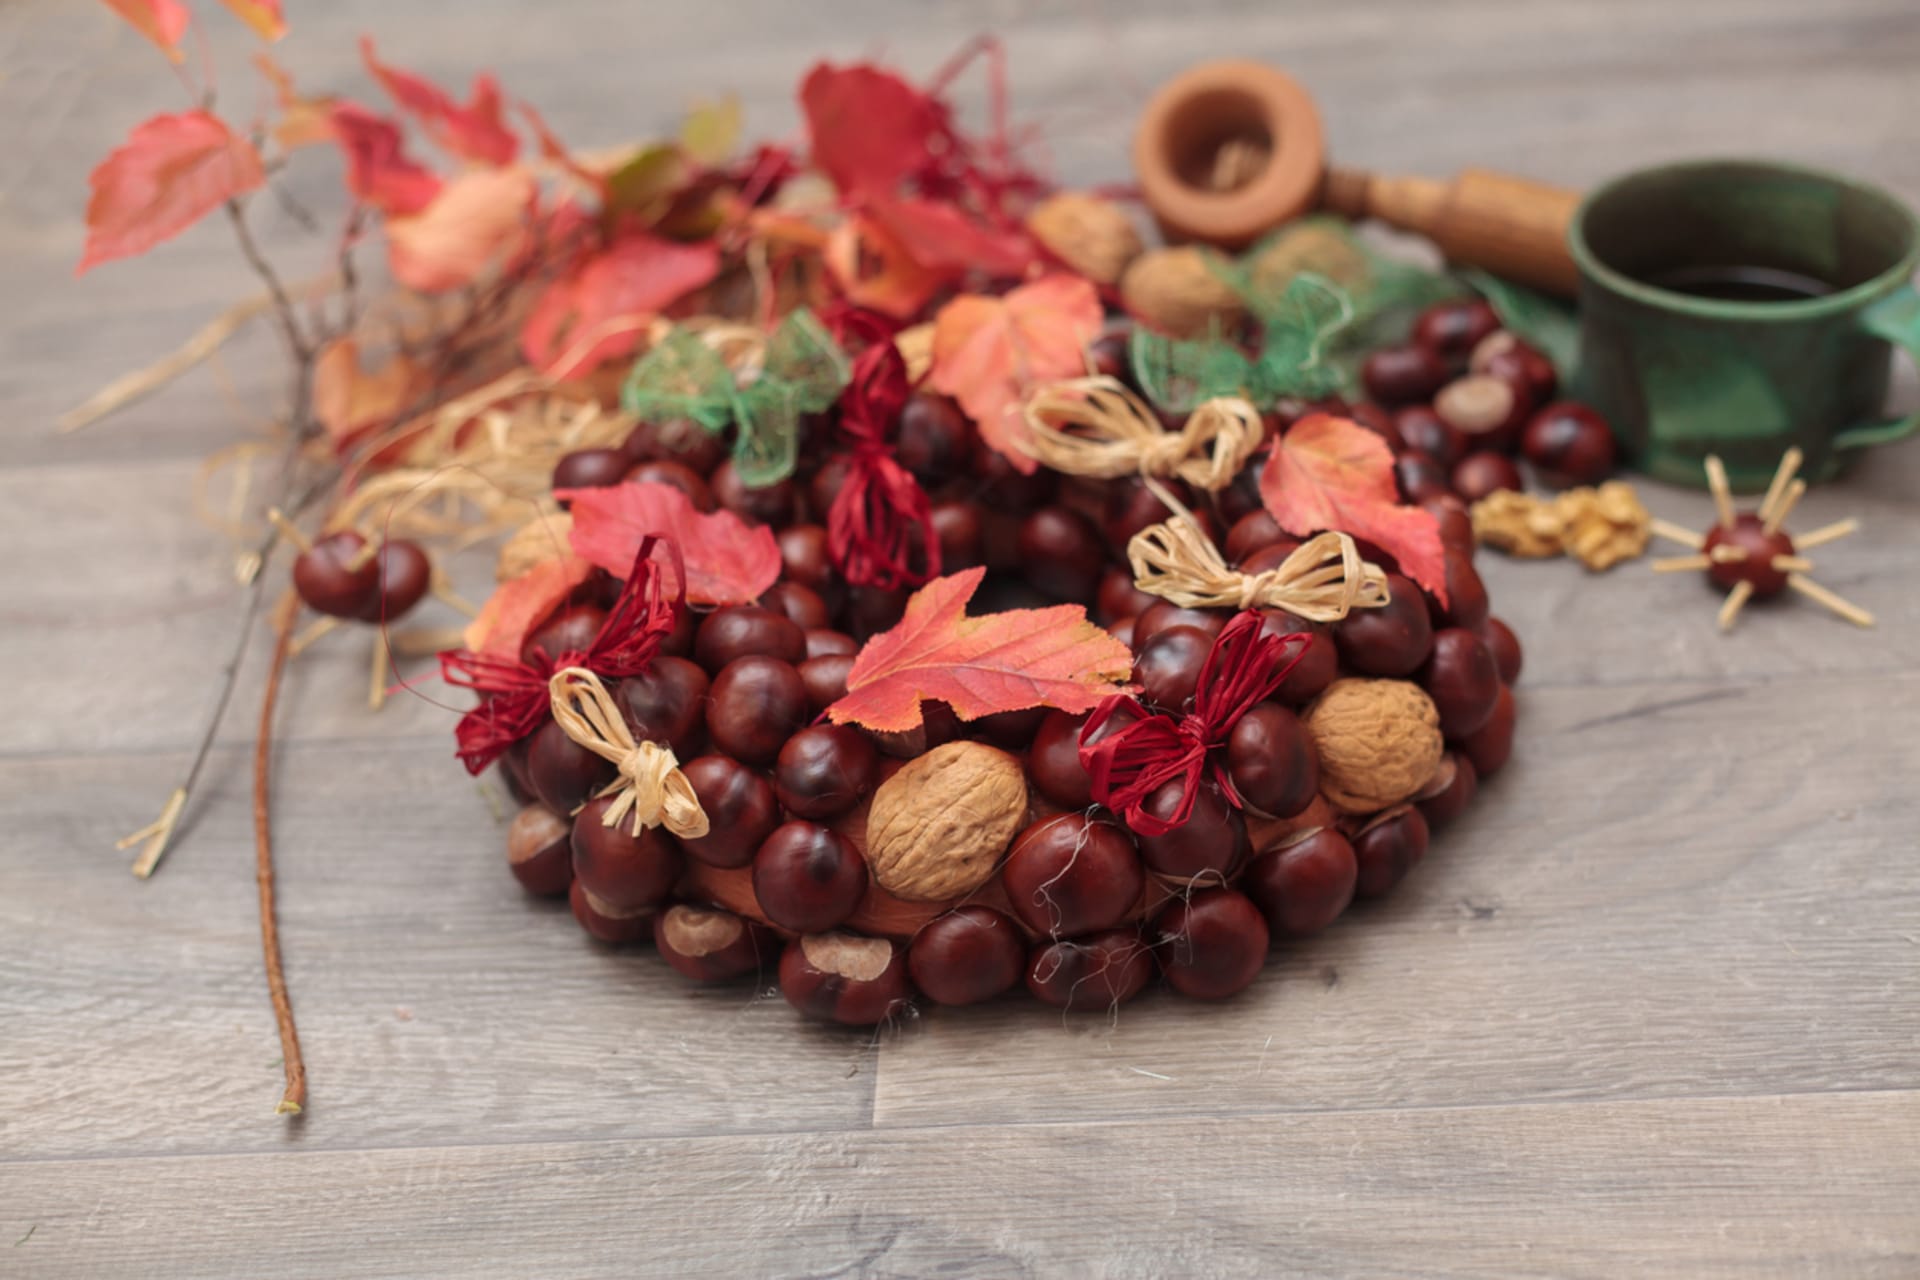 Podzimní věnec vytvořte z kaštanů, skořápek a barevných listů